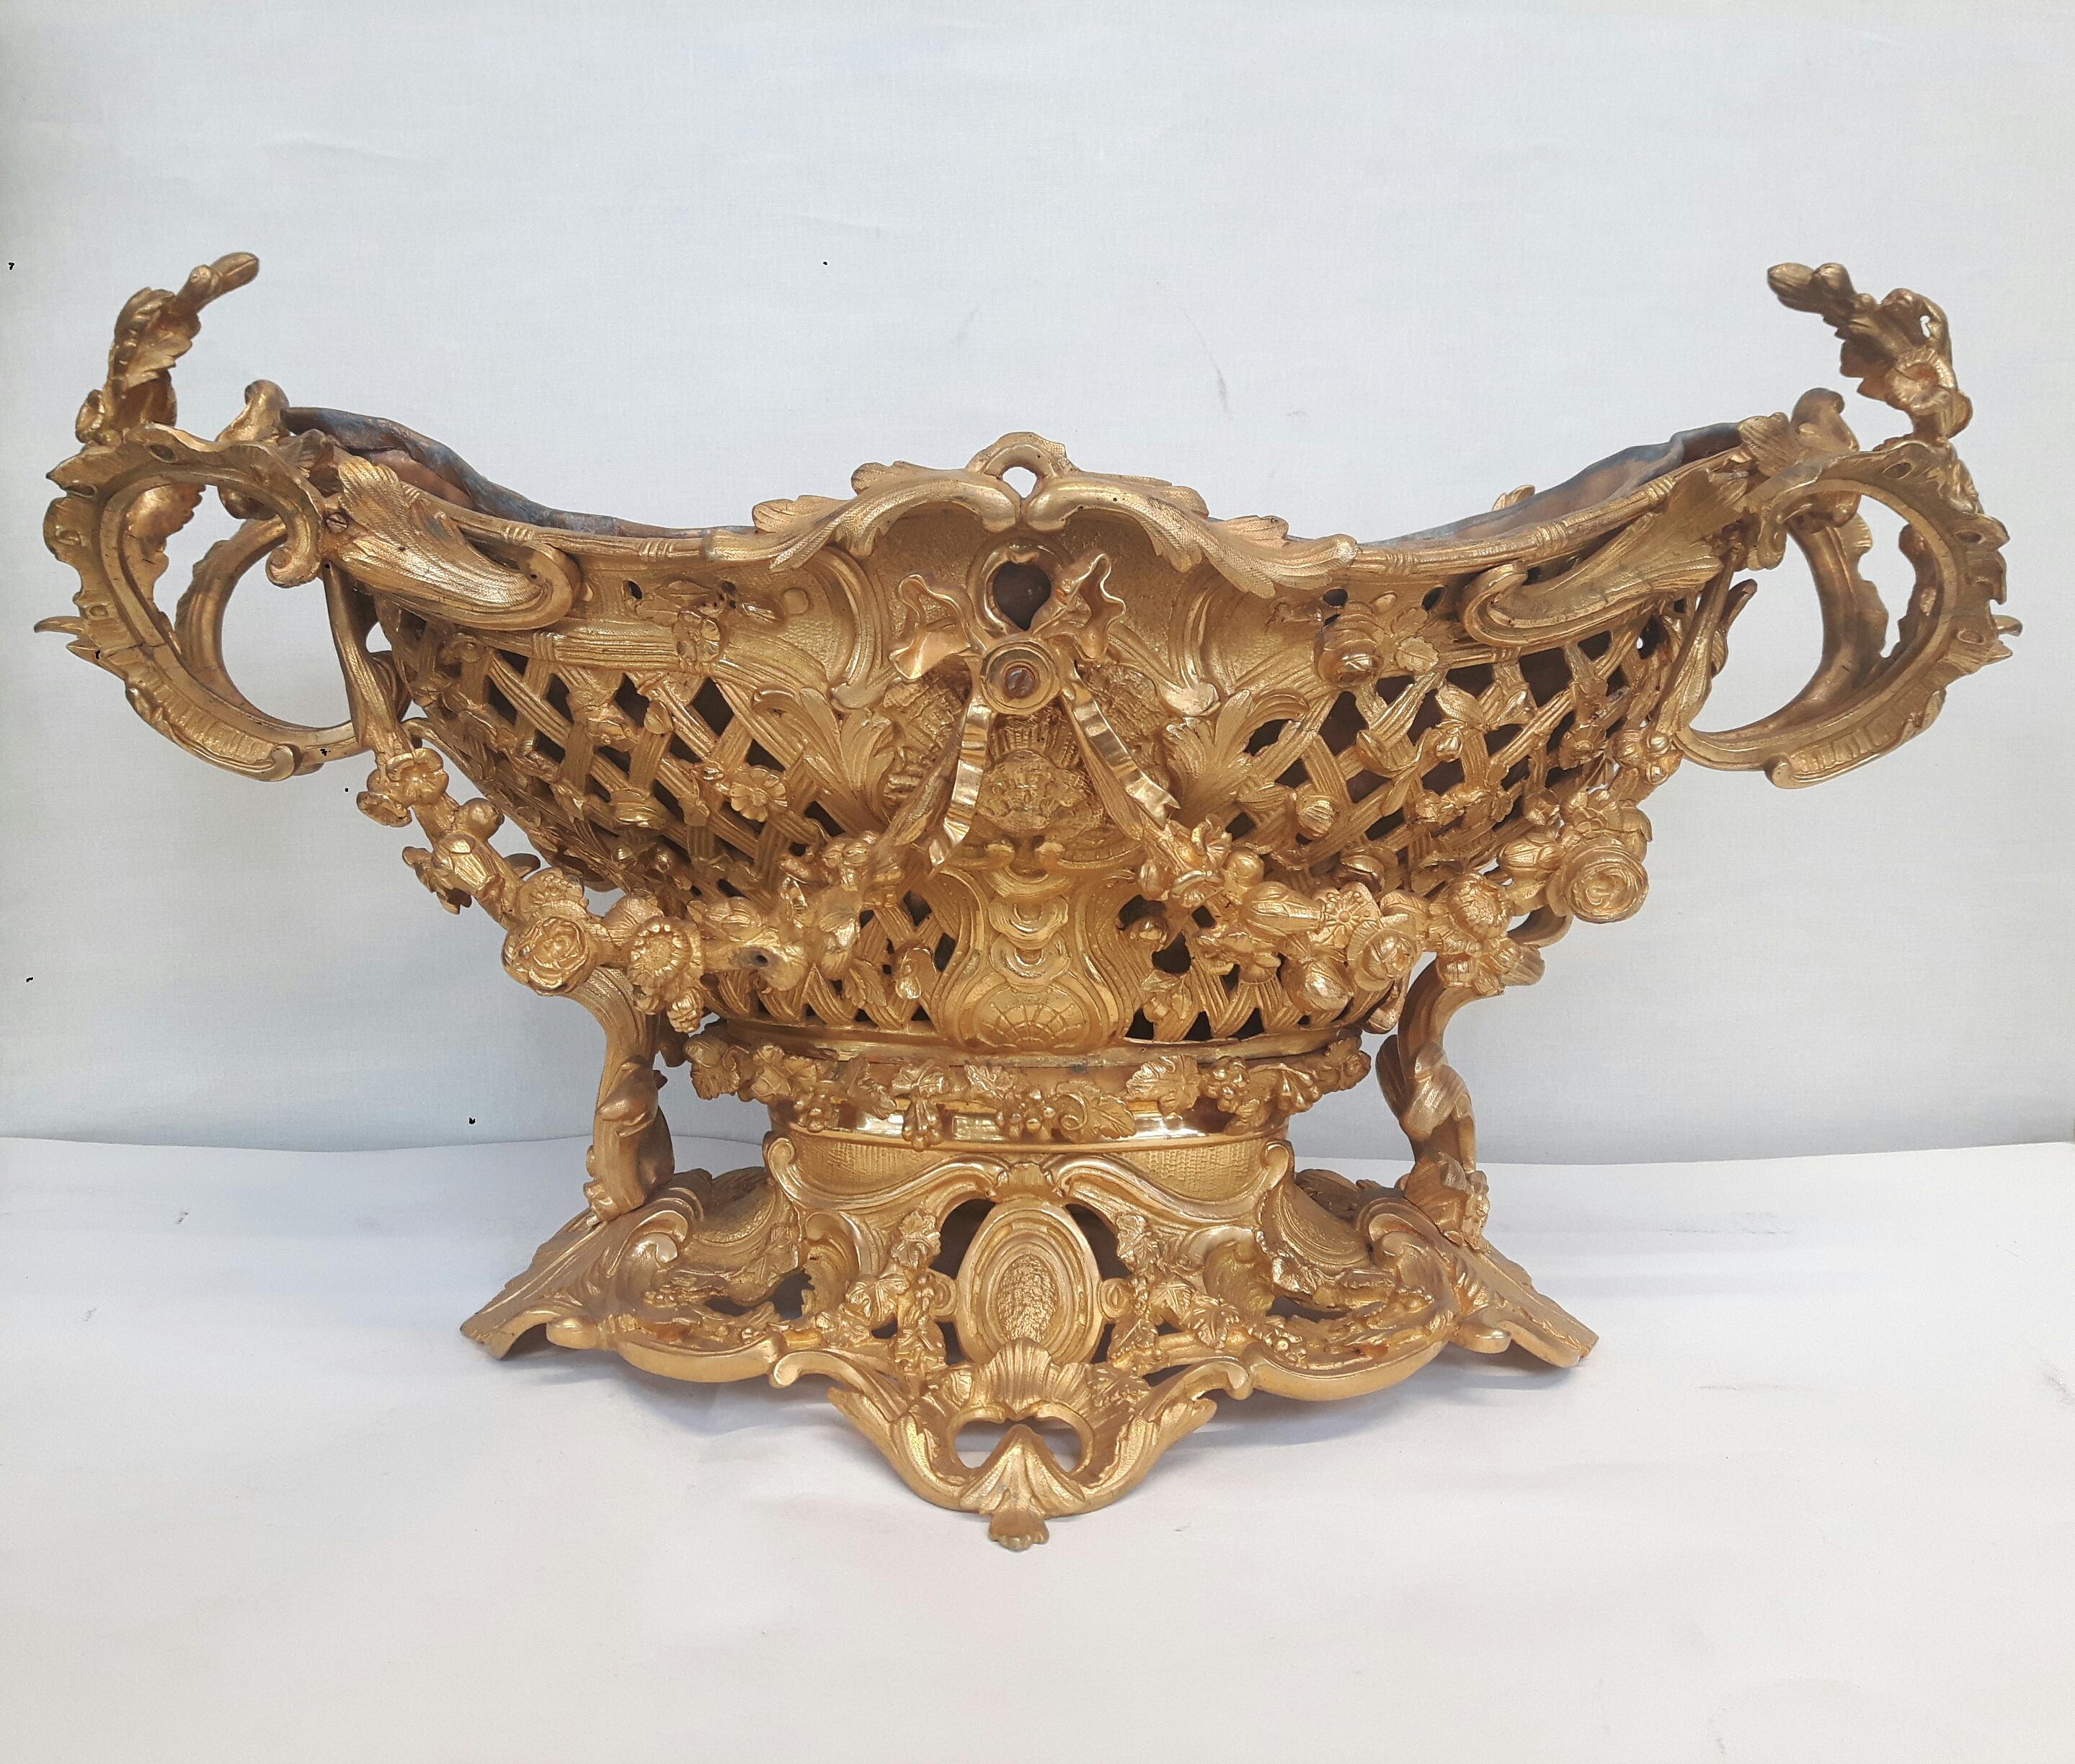 grand centre de table en bronze doré dans le Teste Rococo, vers 1850, estampillé : H.Picard : forme marquise réticulée en vannerie, anses feuillagées, guirlandes florales, doublure en plomb amovible.